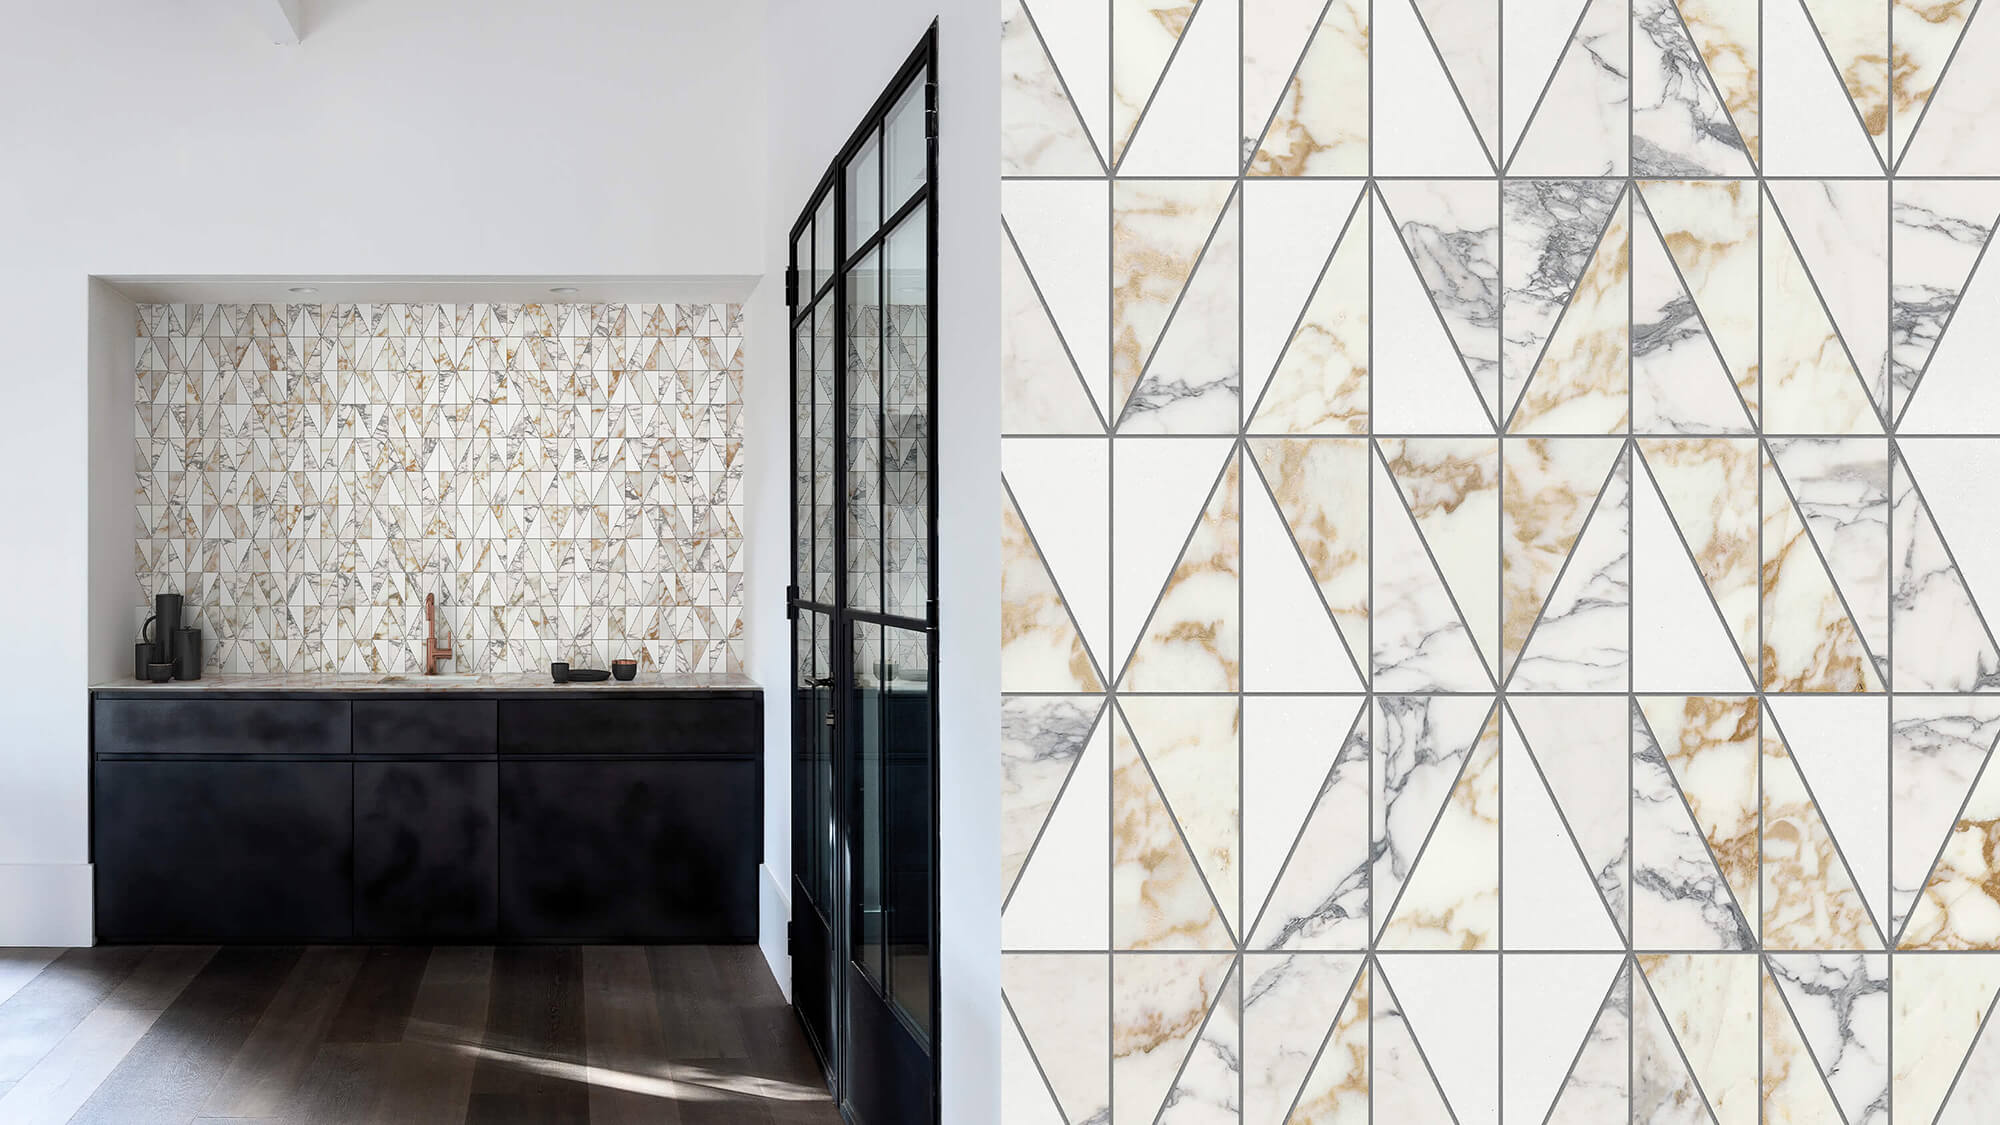 Indoor tile - PAPER BLU - BISAZZA BAGNO - wall / floor / cement